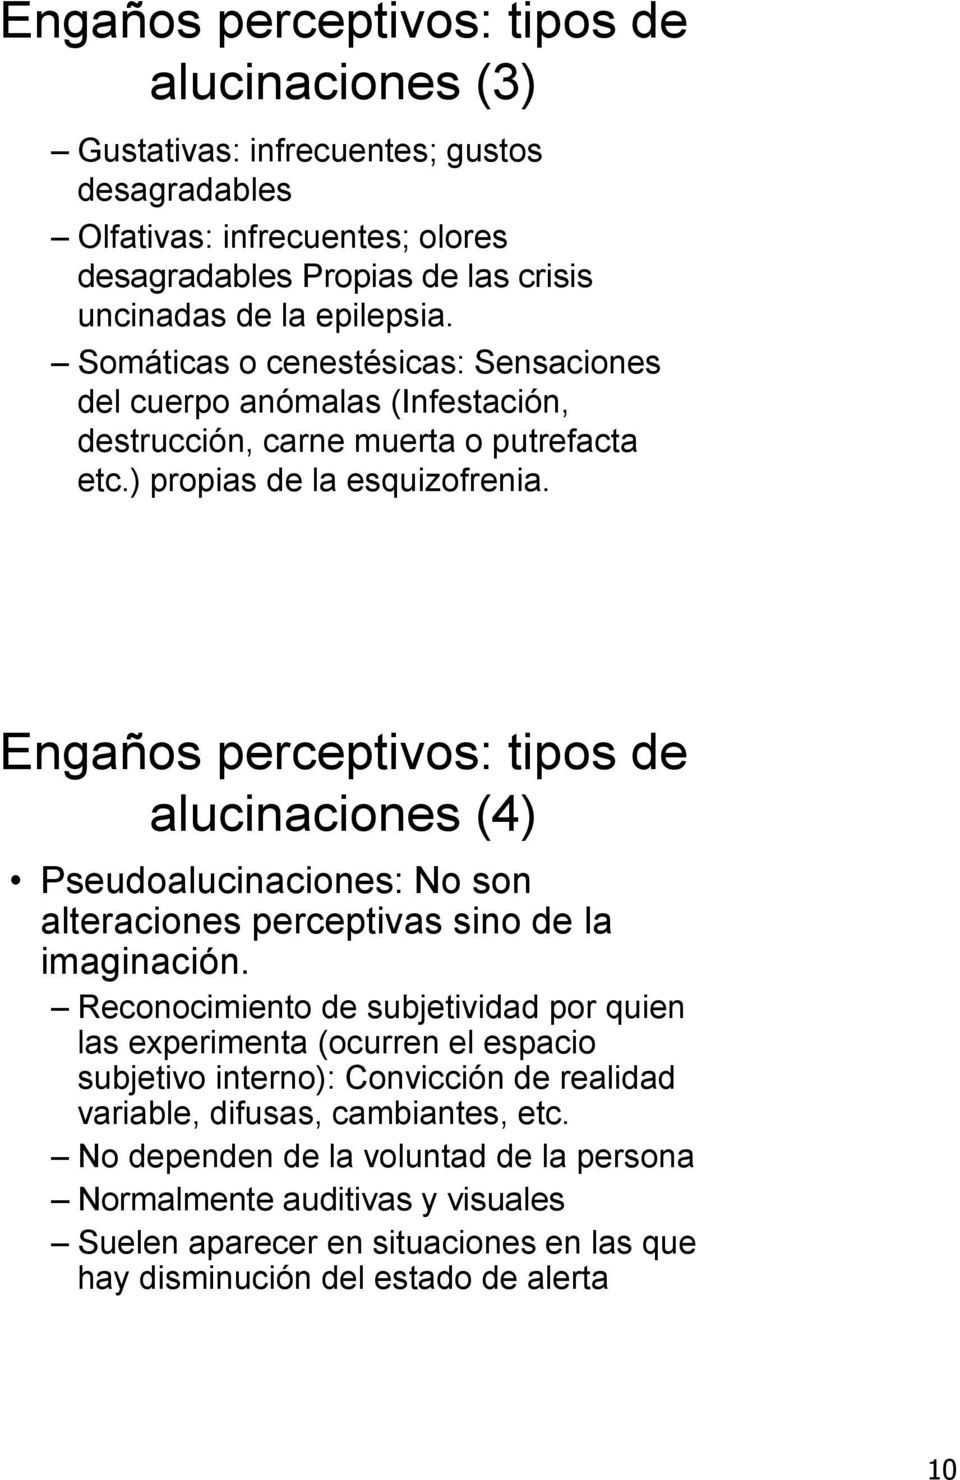 Engaños perceptivos: tipos de alucinaciones (4) Pseudoalucinaciones: No son alteraciones perceptivas sino de la imaginación.